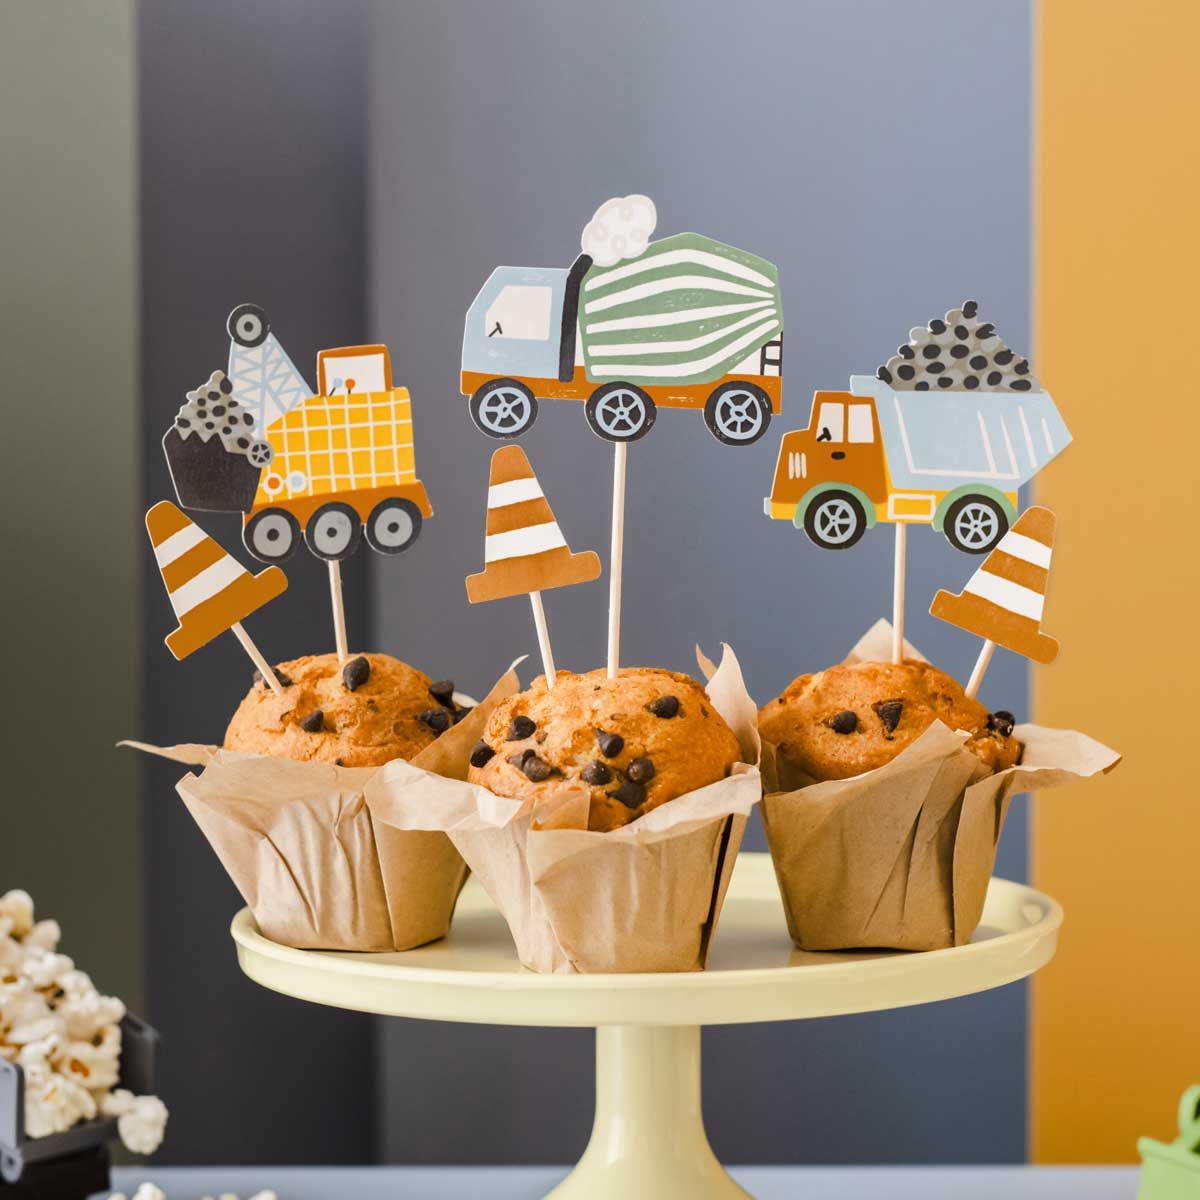 Muffins dekorerade med cake toppers föreställande bilar och fordon